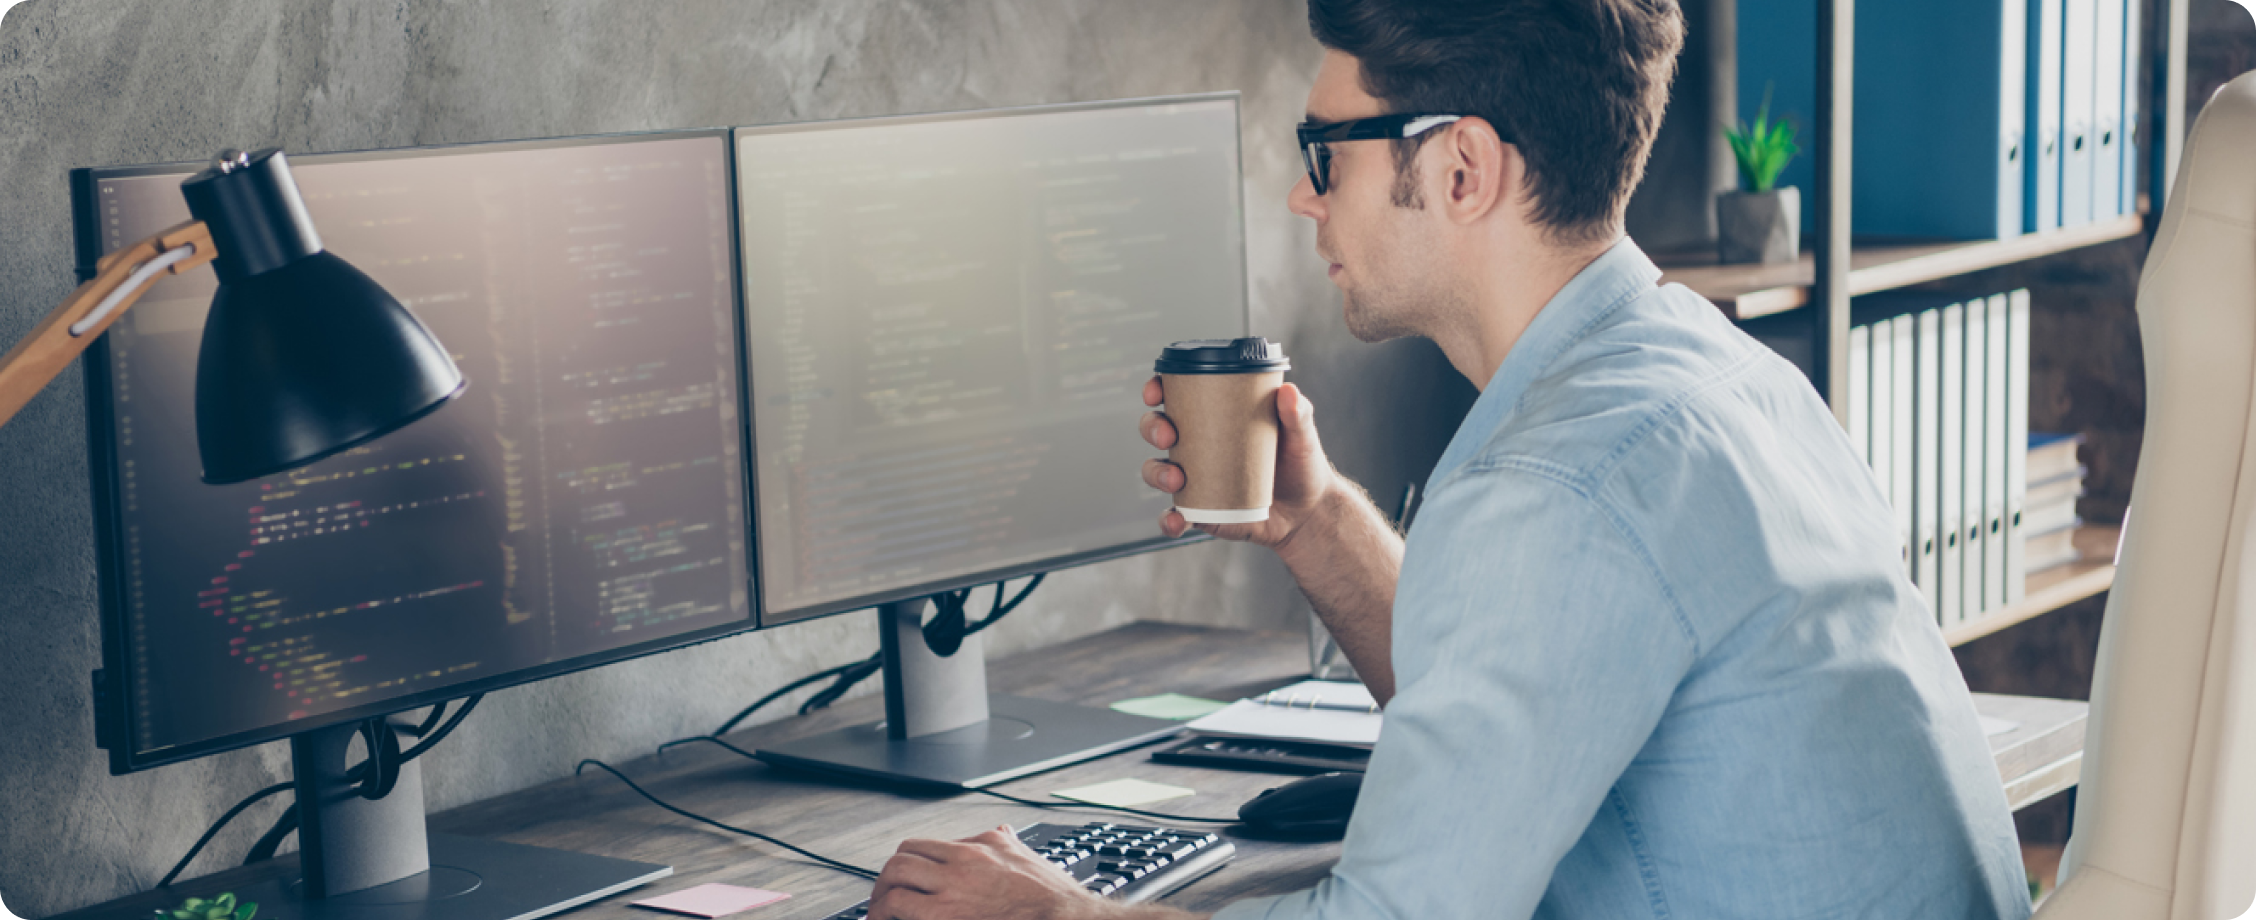 Ein Mann in einem blauen T-Shirt hält eine Kaffeetasse, während er an einem Desktop-PC arbeitet.